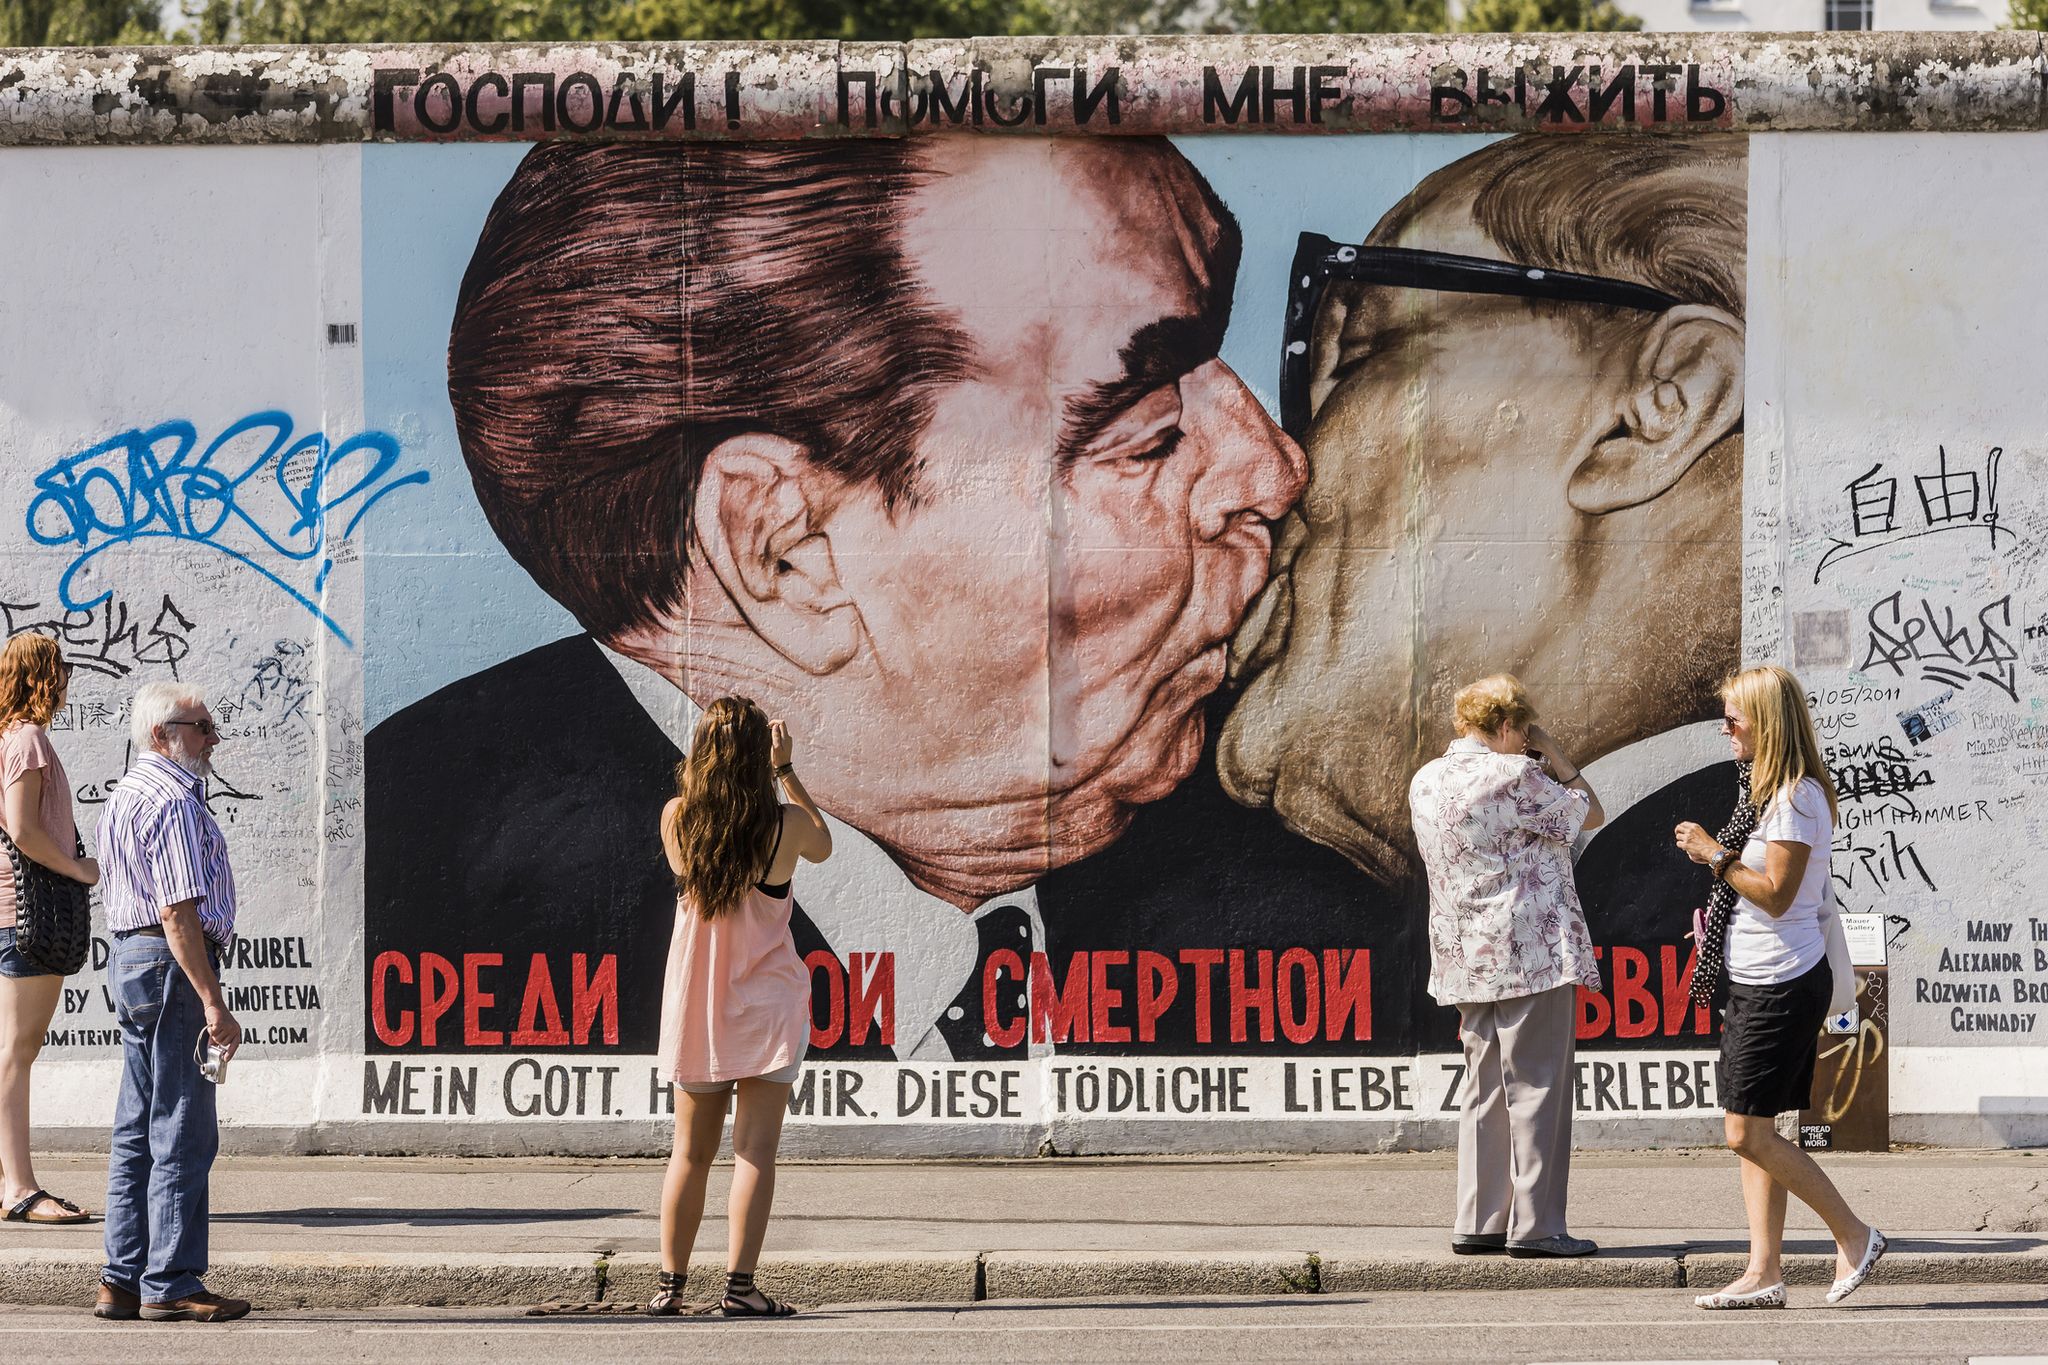 Berlin Wall East Side Gallery, murales